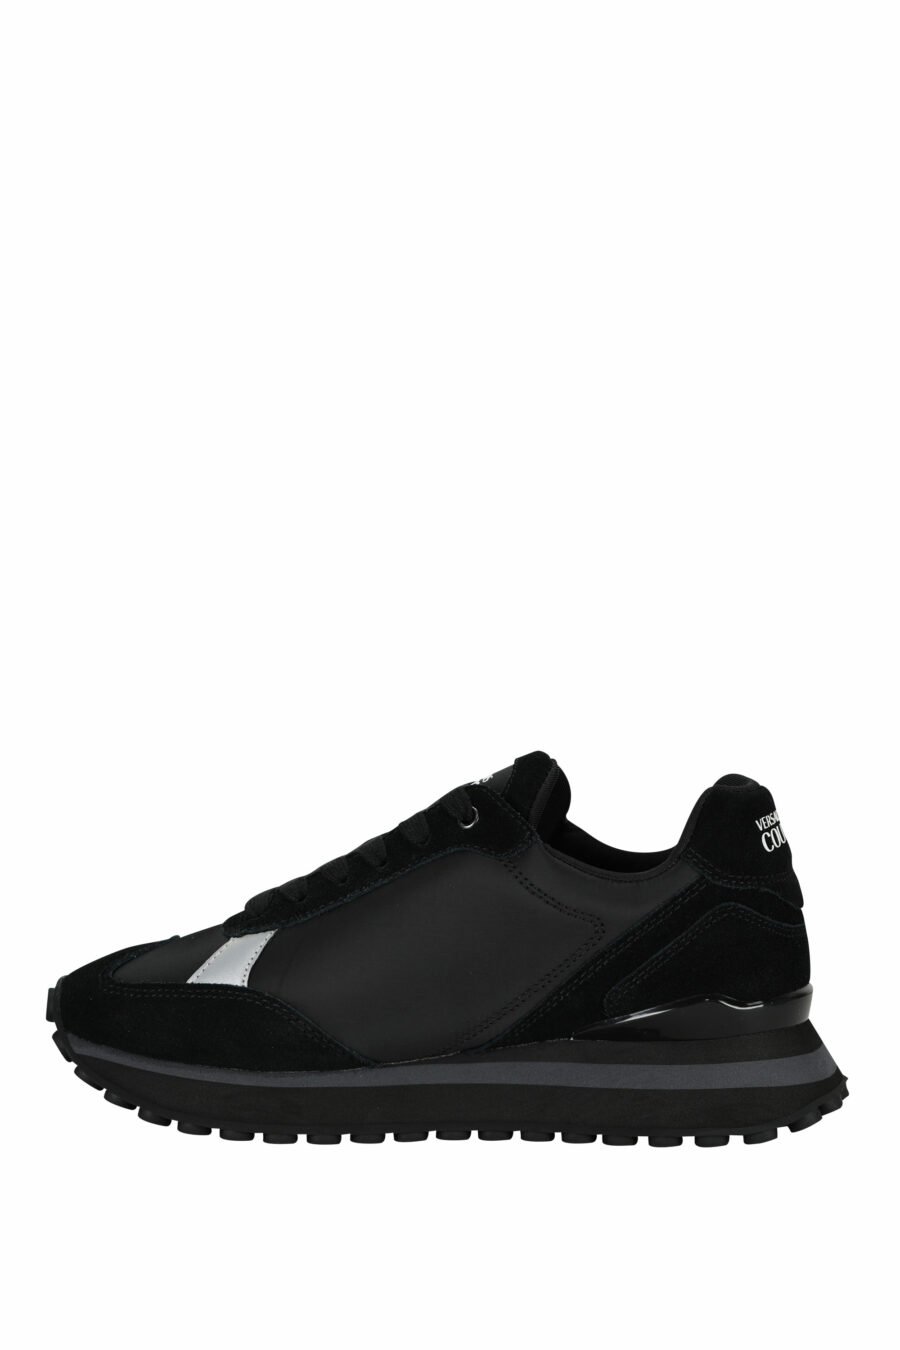 Zapatillas negras mix con minilogo blanco y suela negra - 8052019606362 2